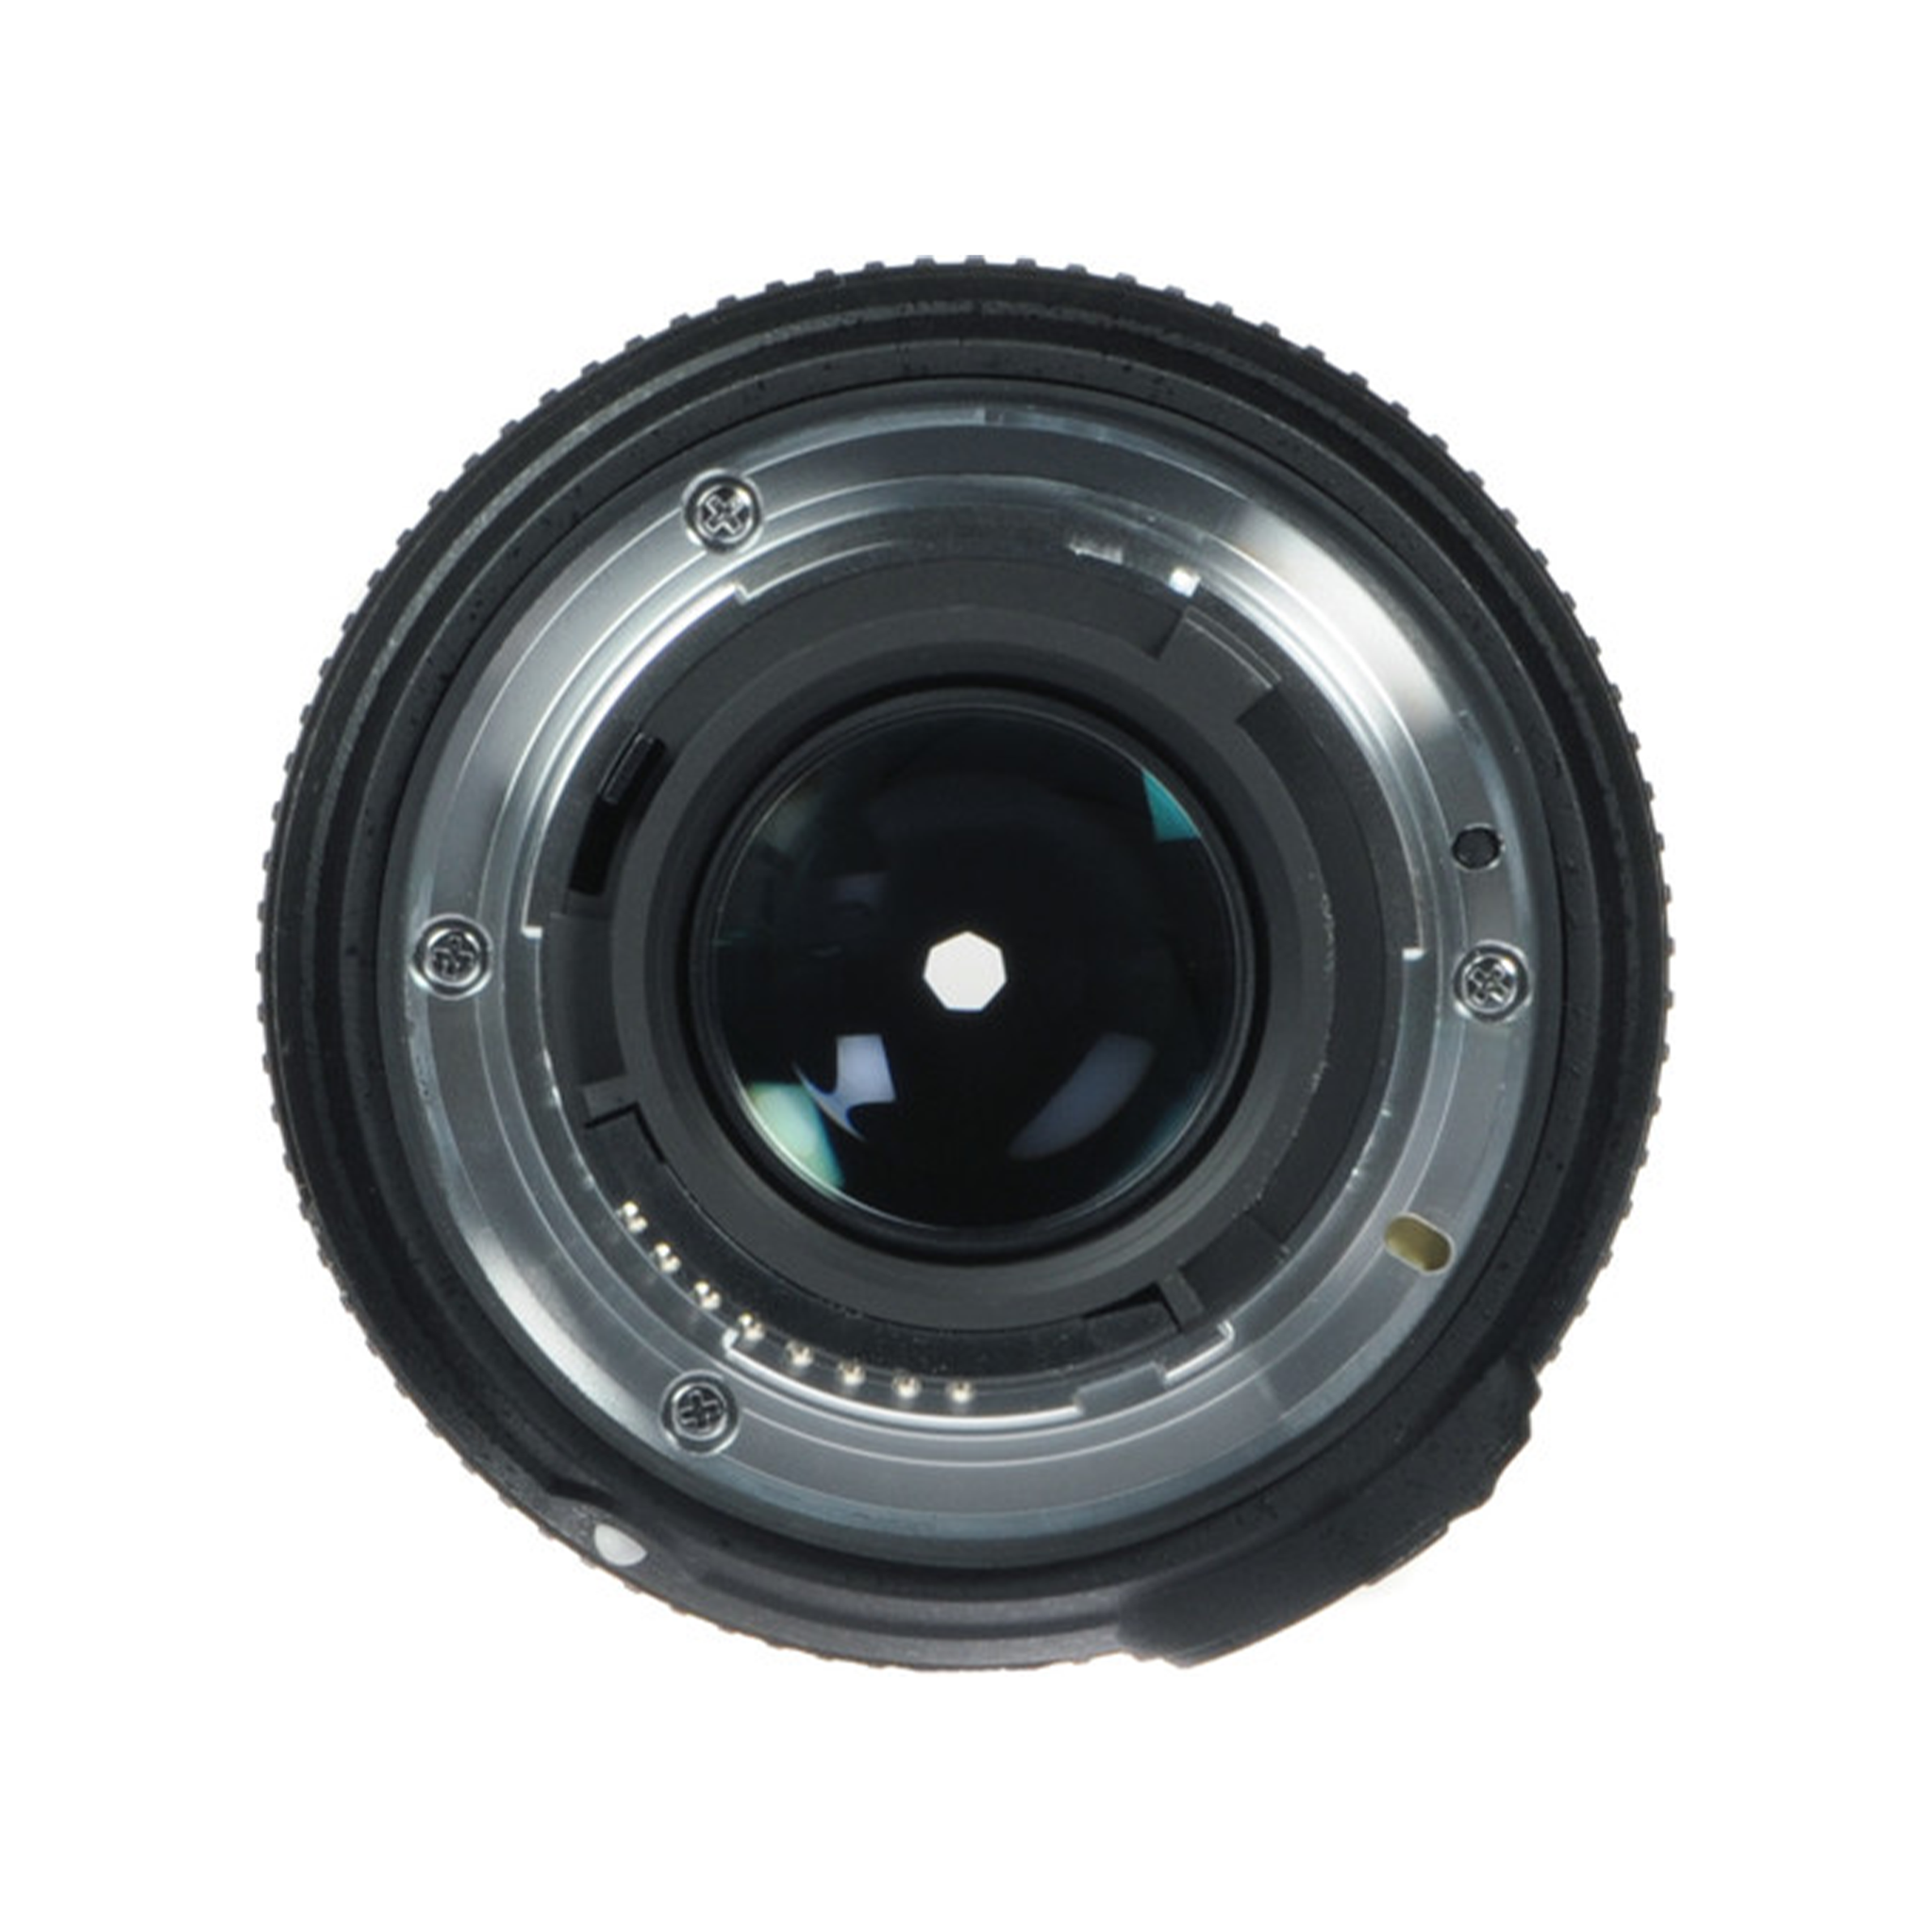 Nikon AF-S NIKKOR 50mm f/1.8G Lens-Camera Lenses-futuromic